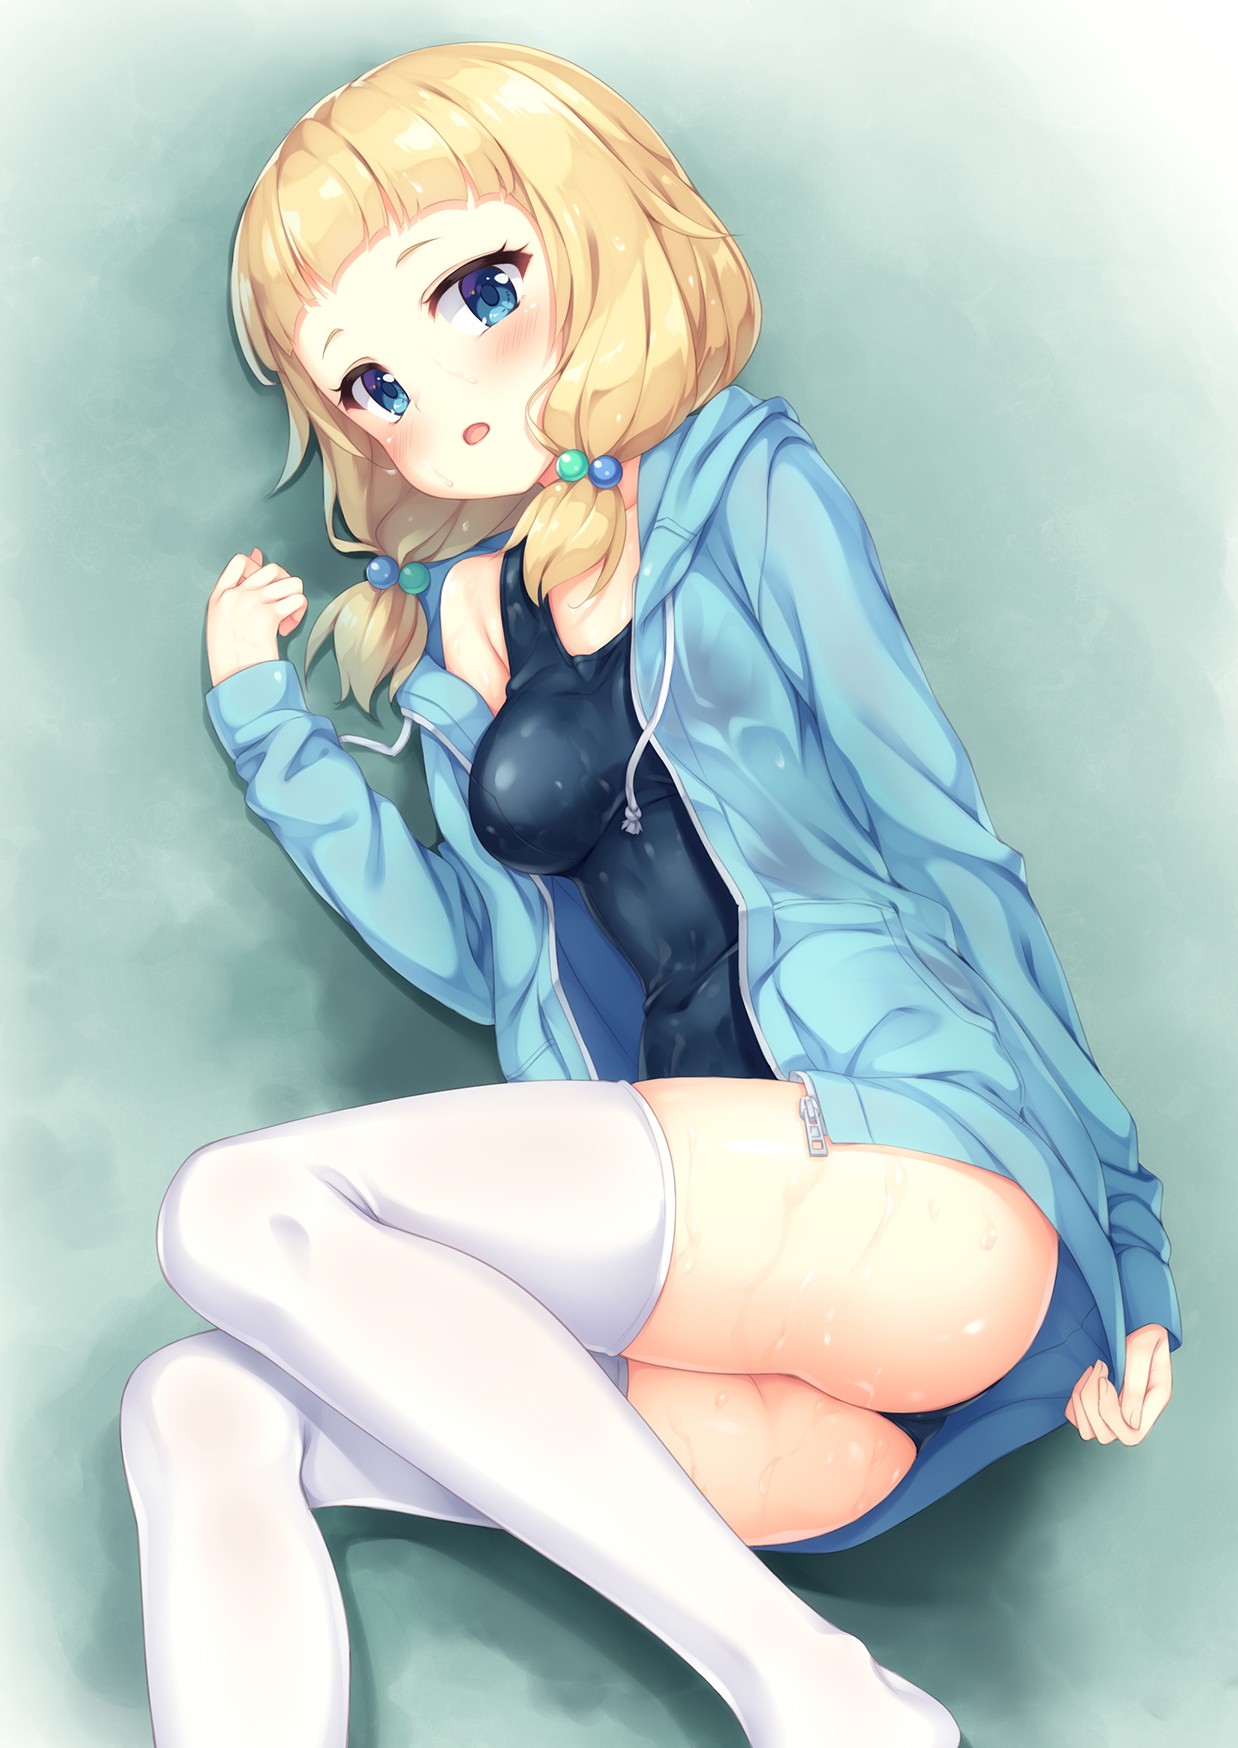 Anime 1238x1748 anime anime girls New Game!  Nene Sakura ass open shirt wet wet clothing short hair blonde blue eyes stockings